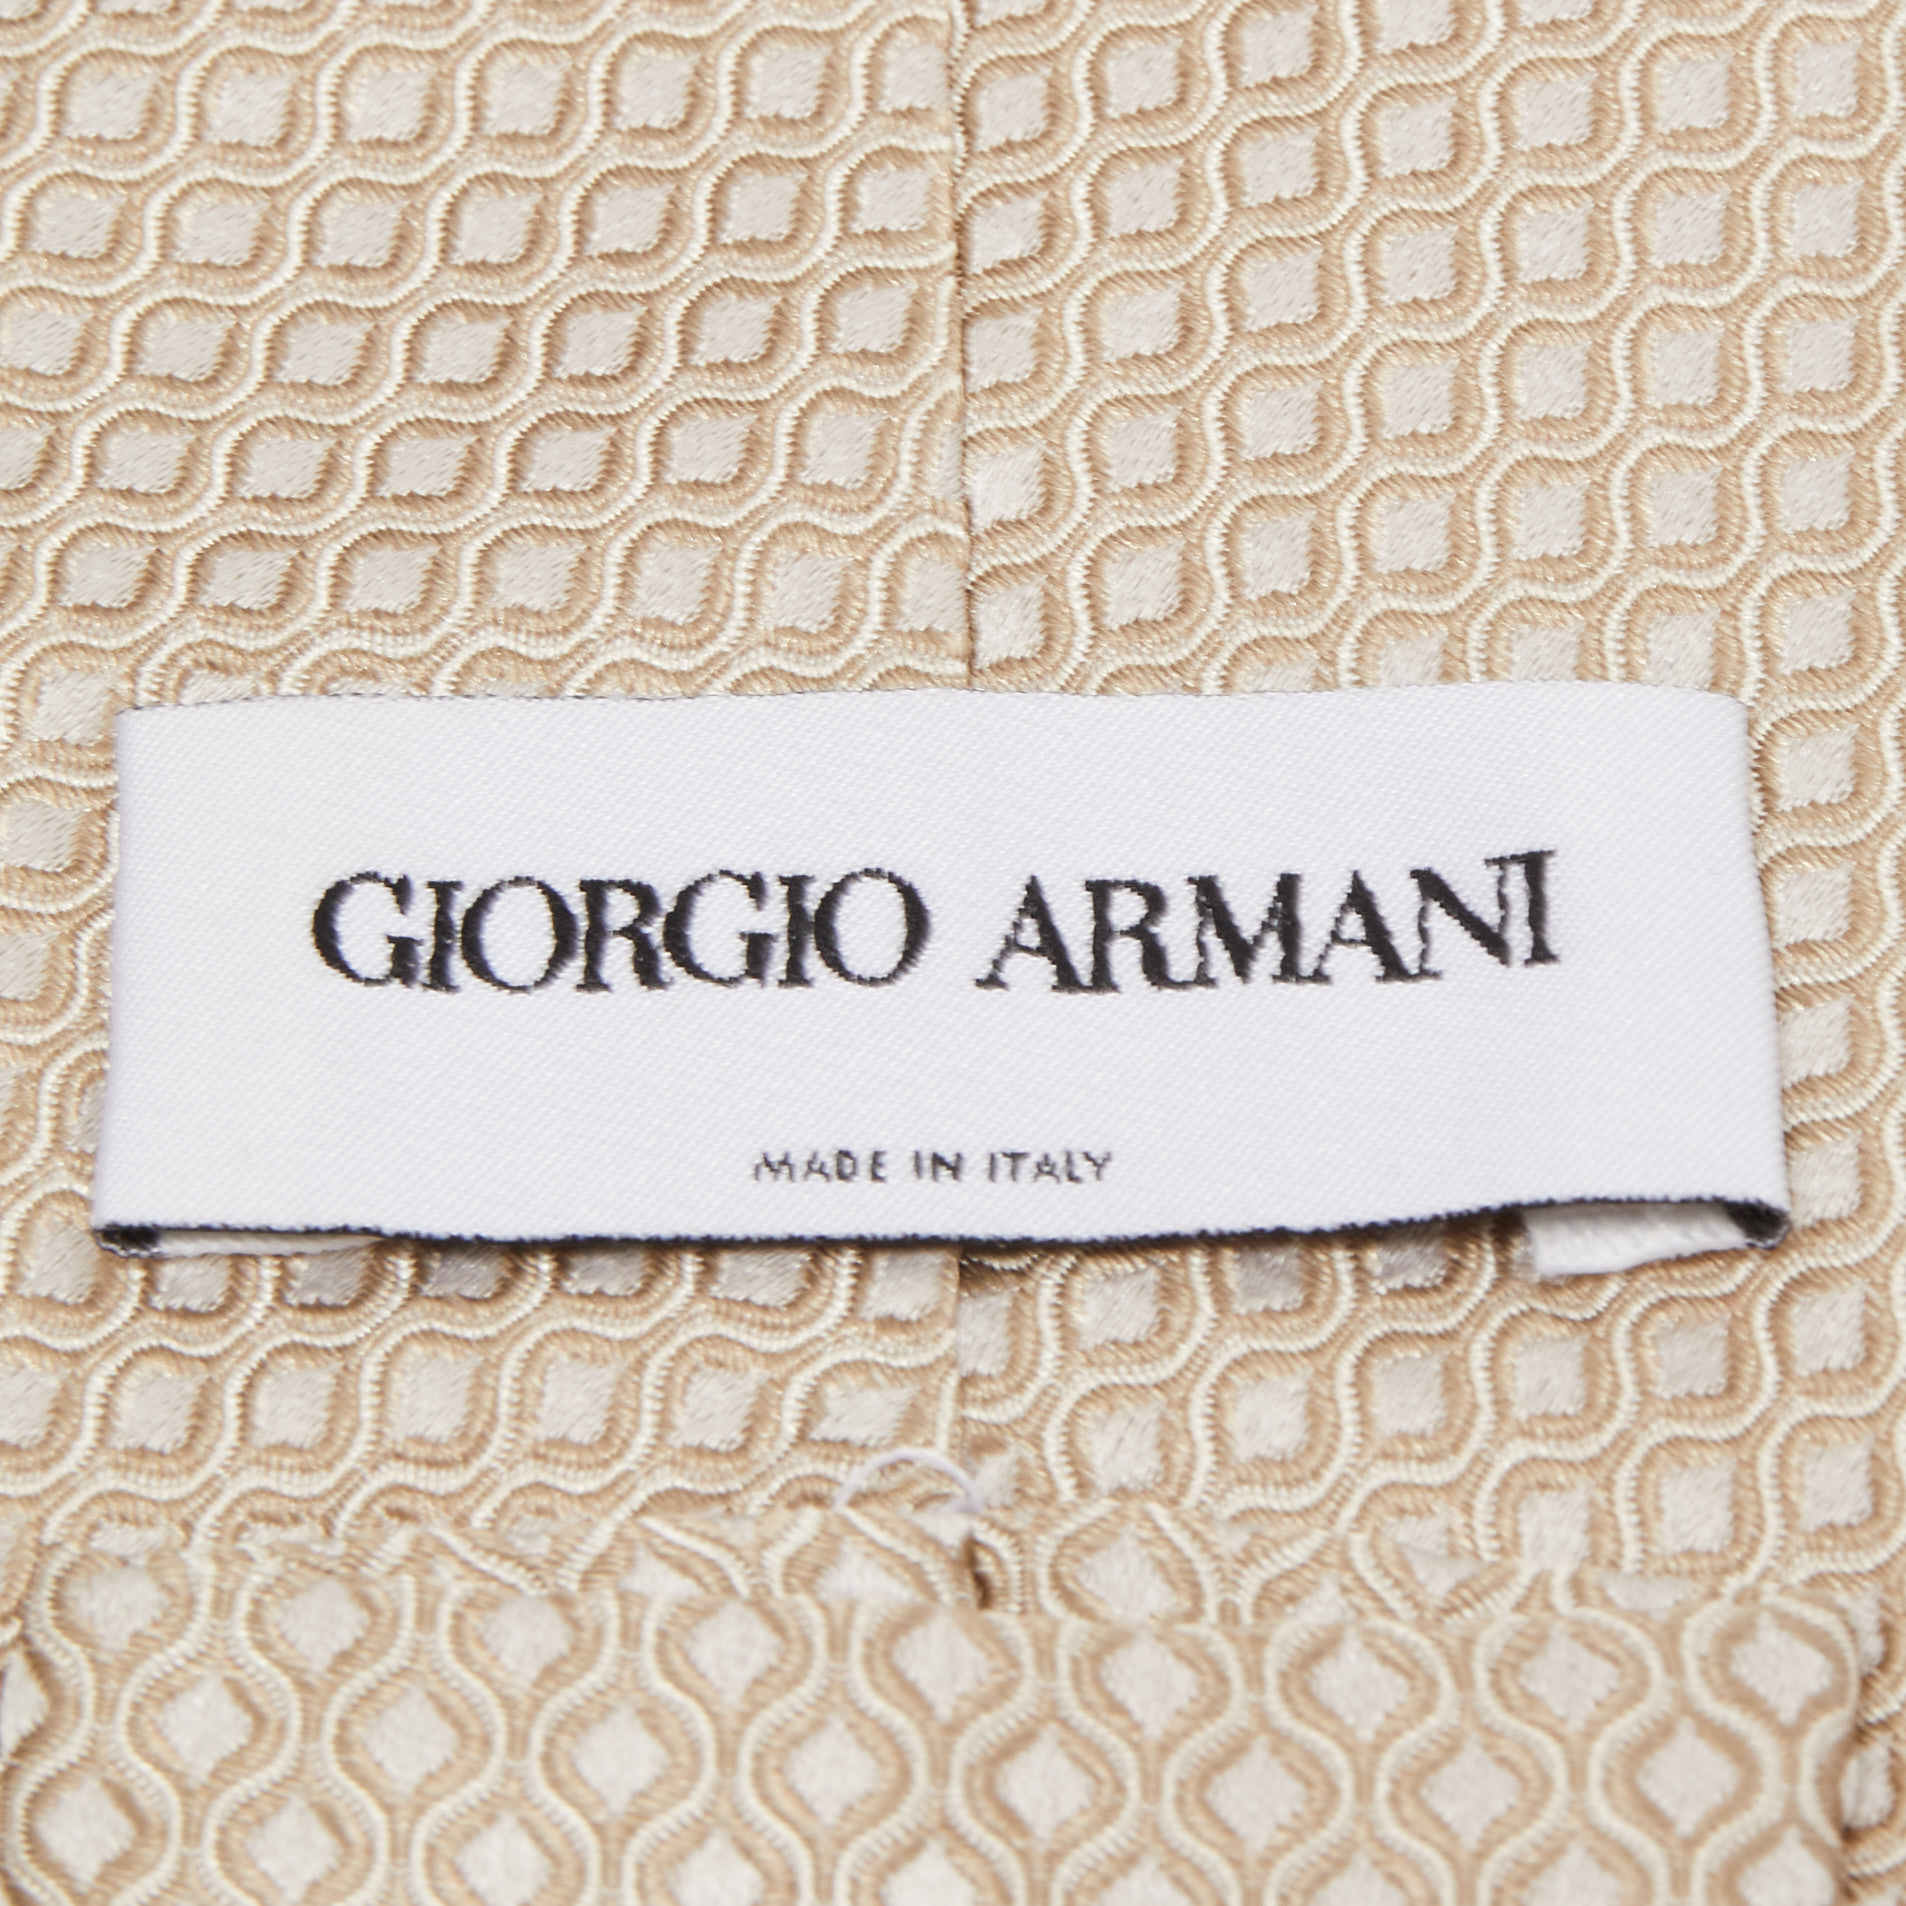 Giorgio Armani Beige Patterned Silk Tie